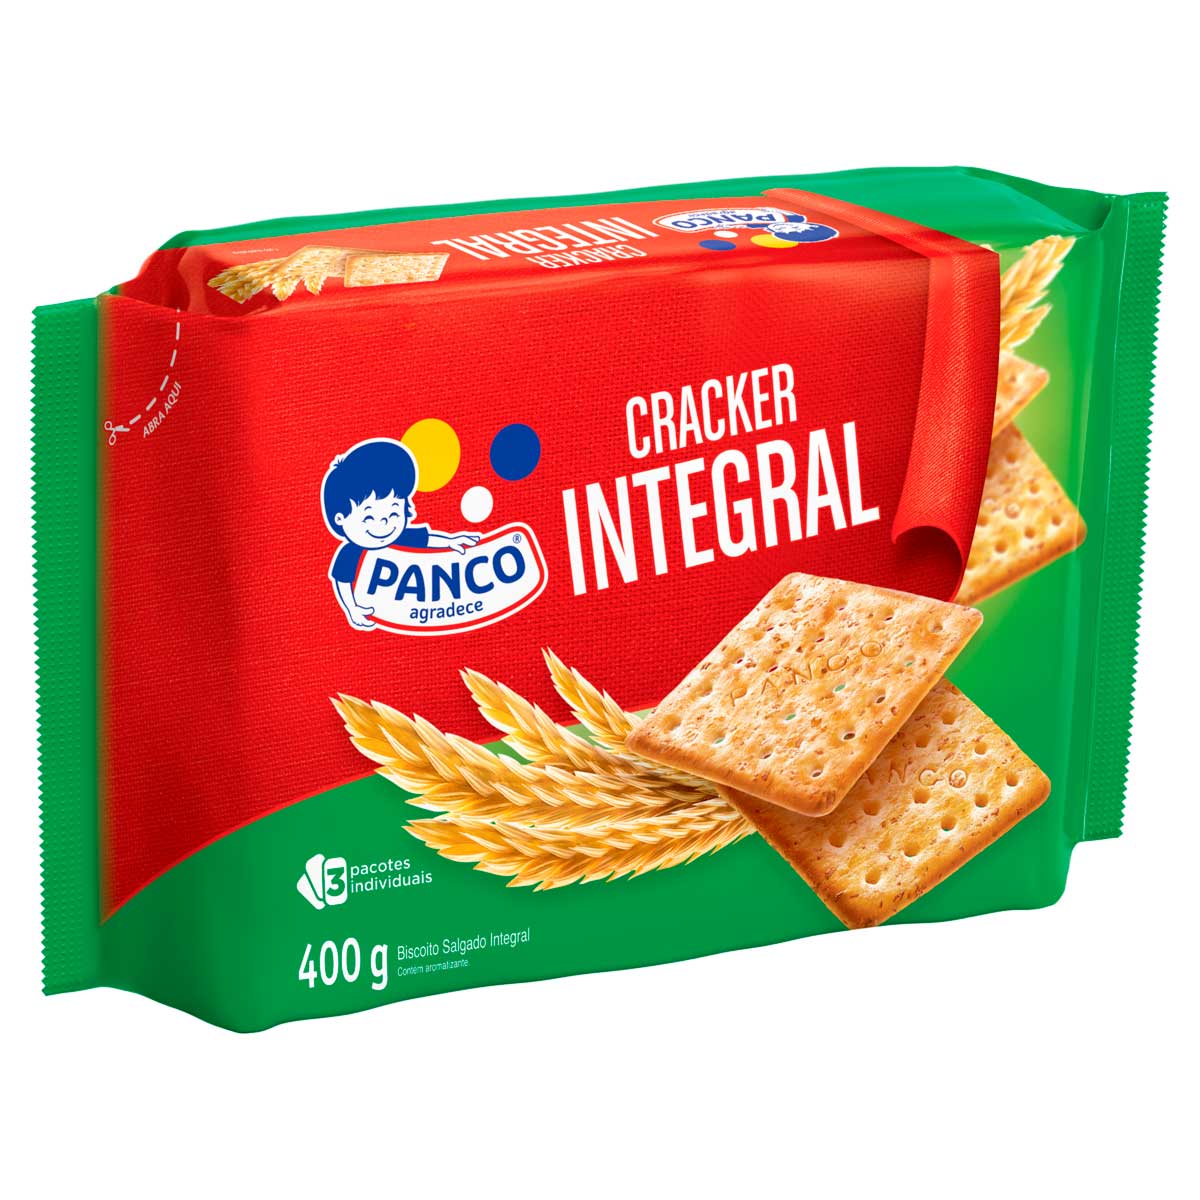 bisc-sublime-panco-cracker-integral-400g-1.jpg